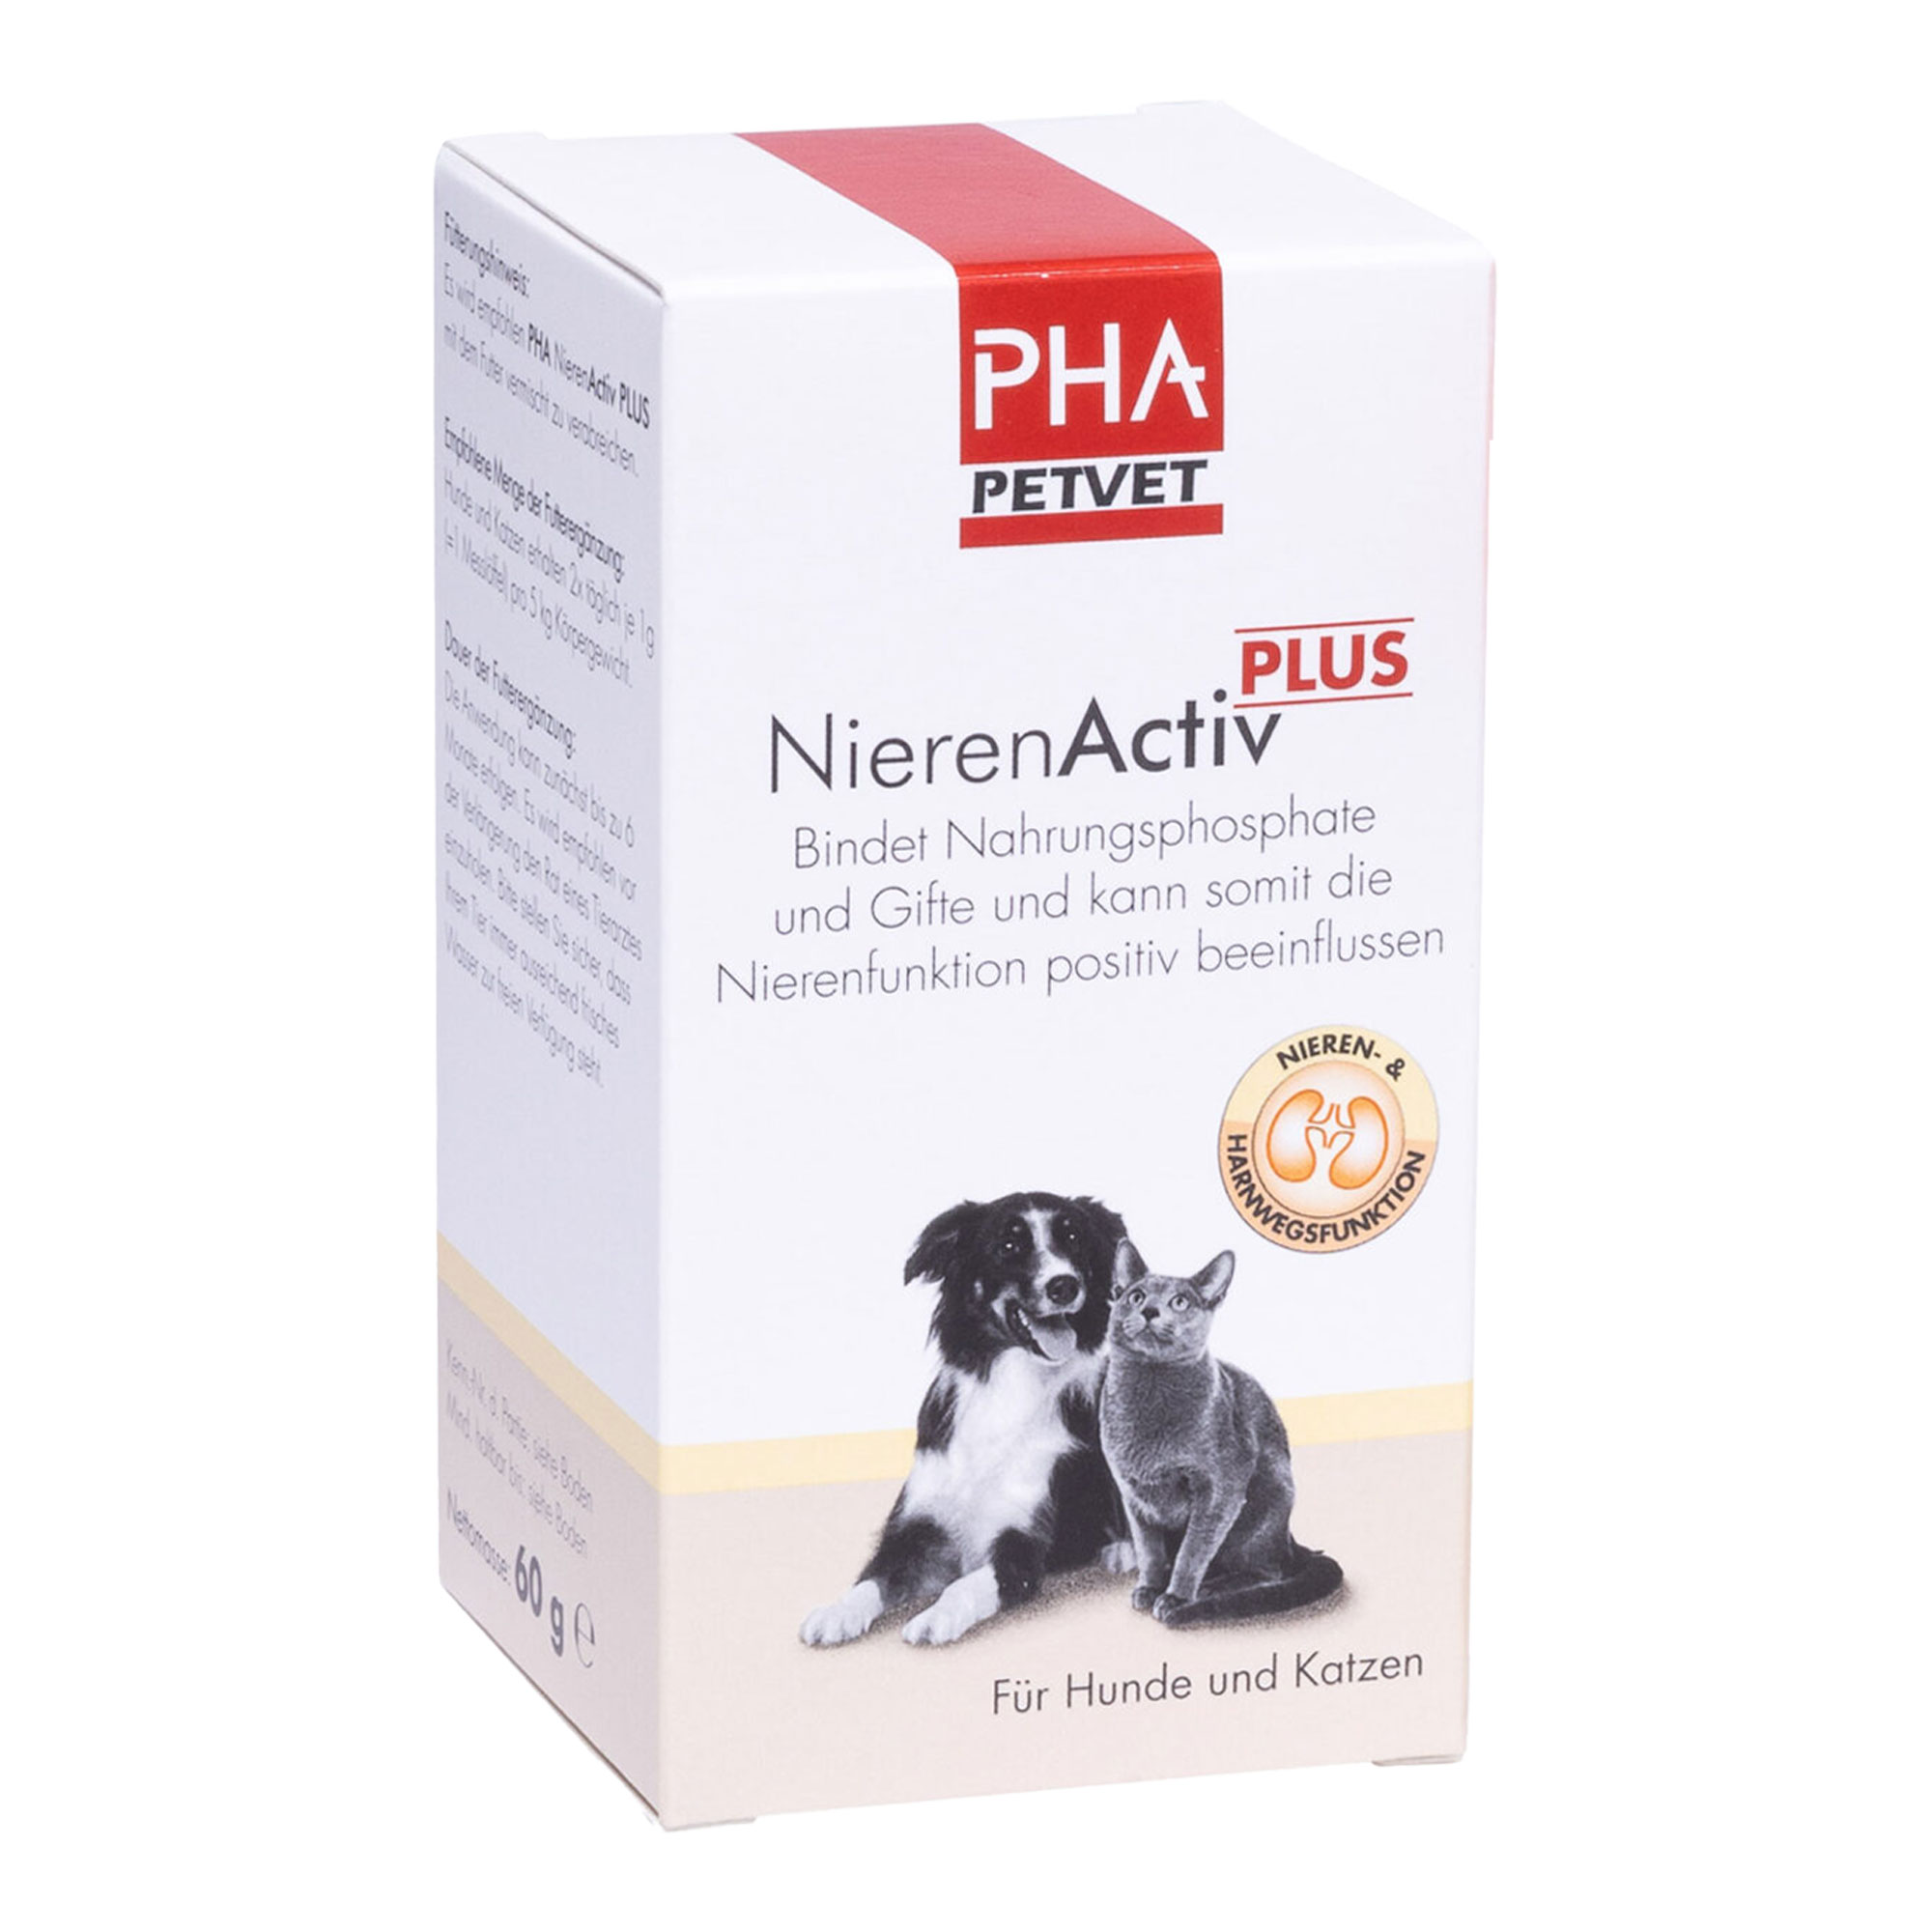 Ergänzungsfuttermittel für Hunde und Katzen. Bindet Nahrungsphosphate und Gifte und kann somit die Nierenfunktion positiv beeinflussen.